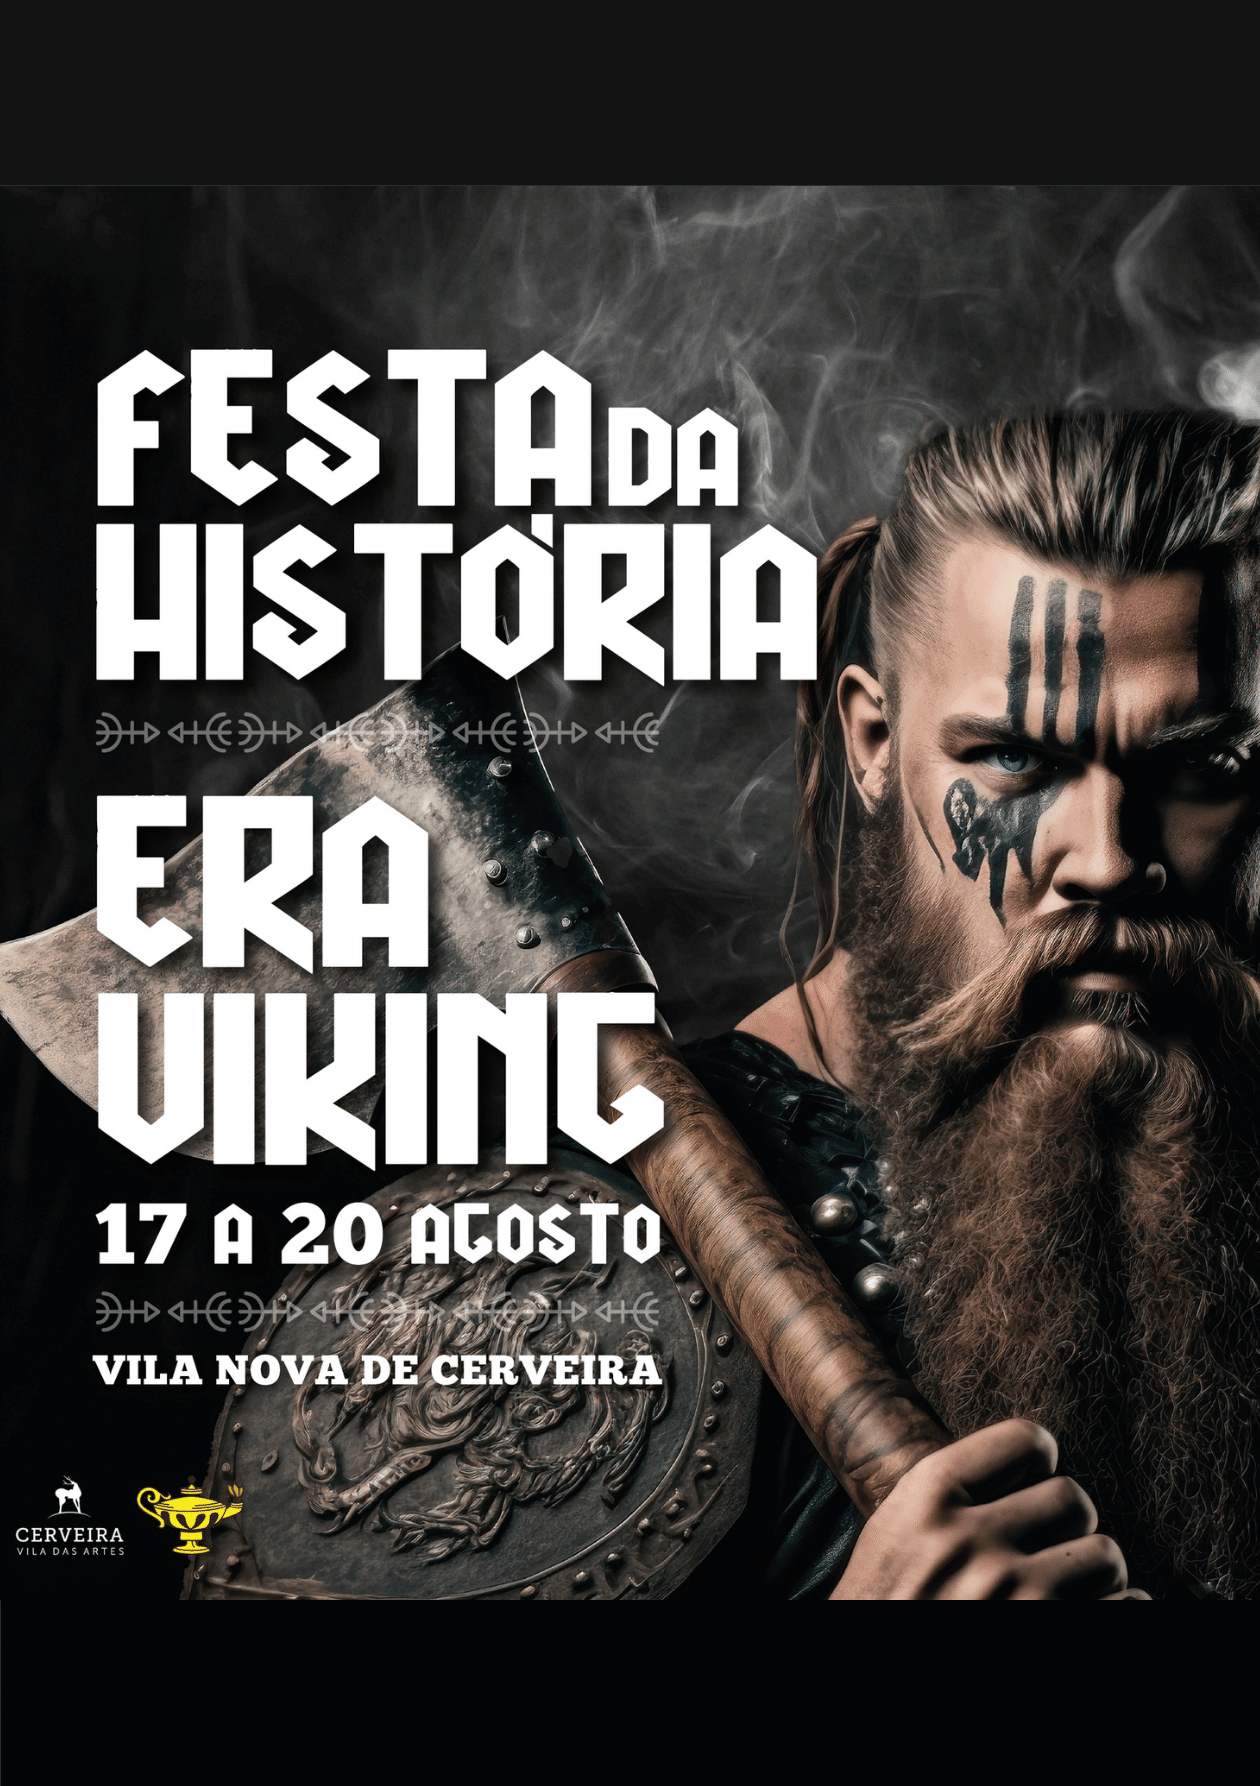 Vila Nova de Cerveira – Festa da História